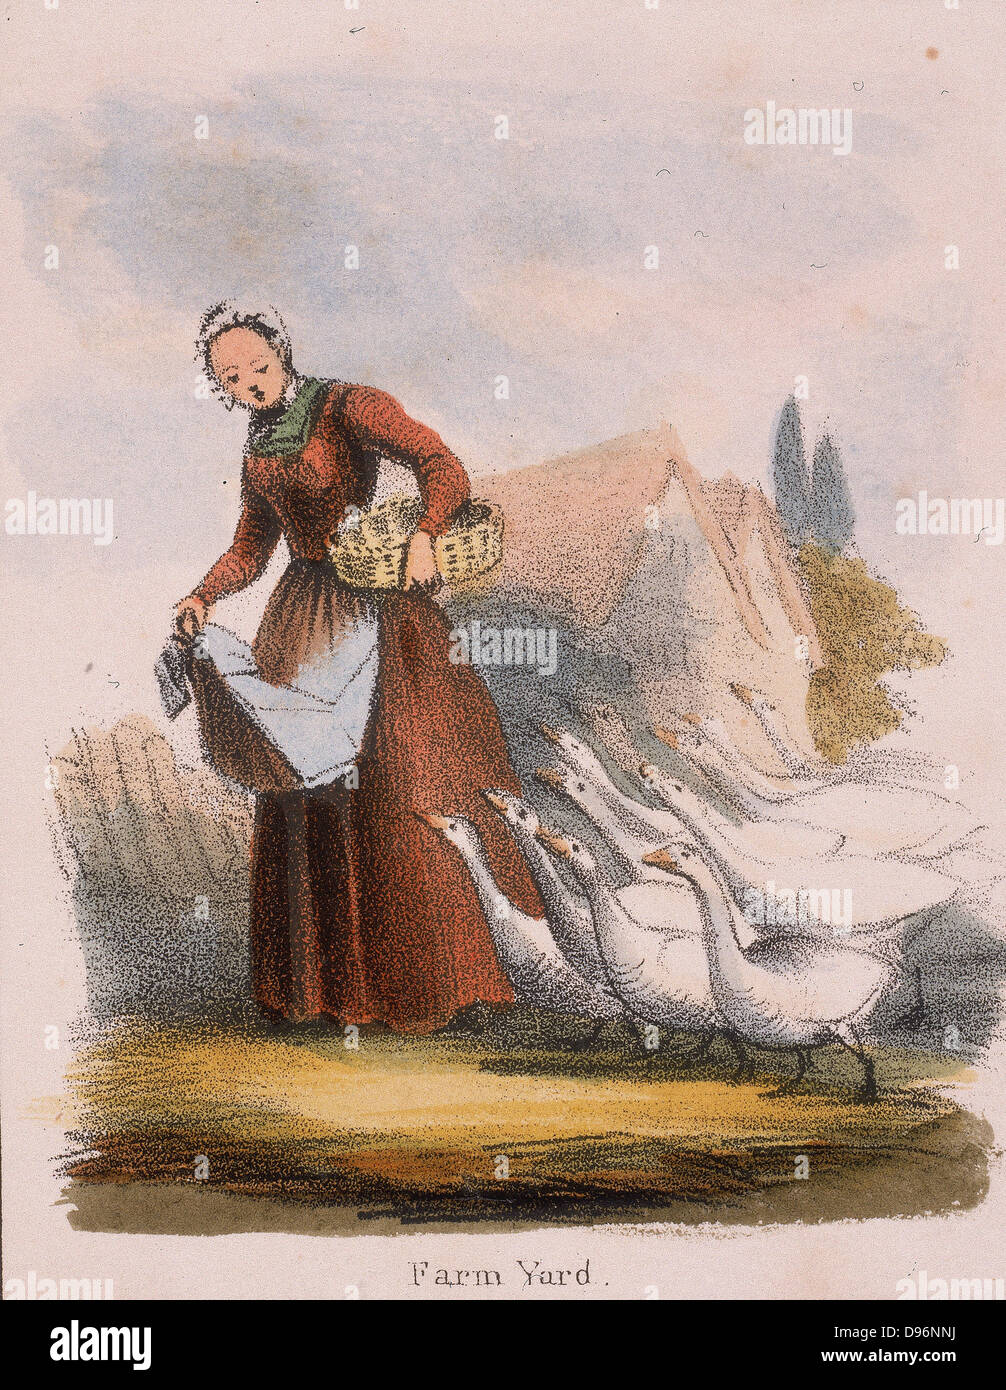 Gänsemagd mit ihrem Vogelschwarm. Von "Grafischen Abbildungen von Tieren und deren Utility für den Menschen" London, c1850. Stockfoto